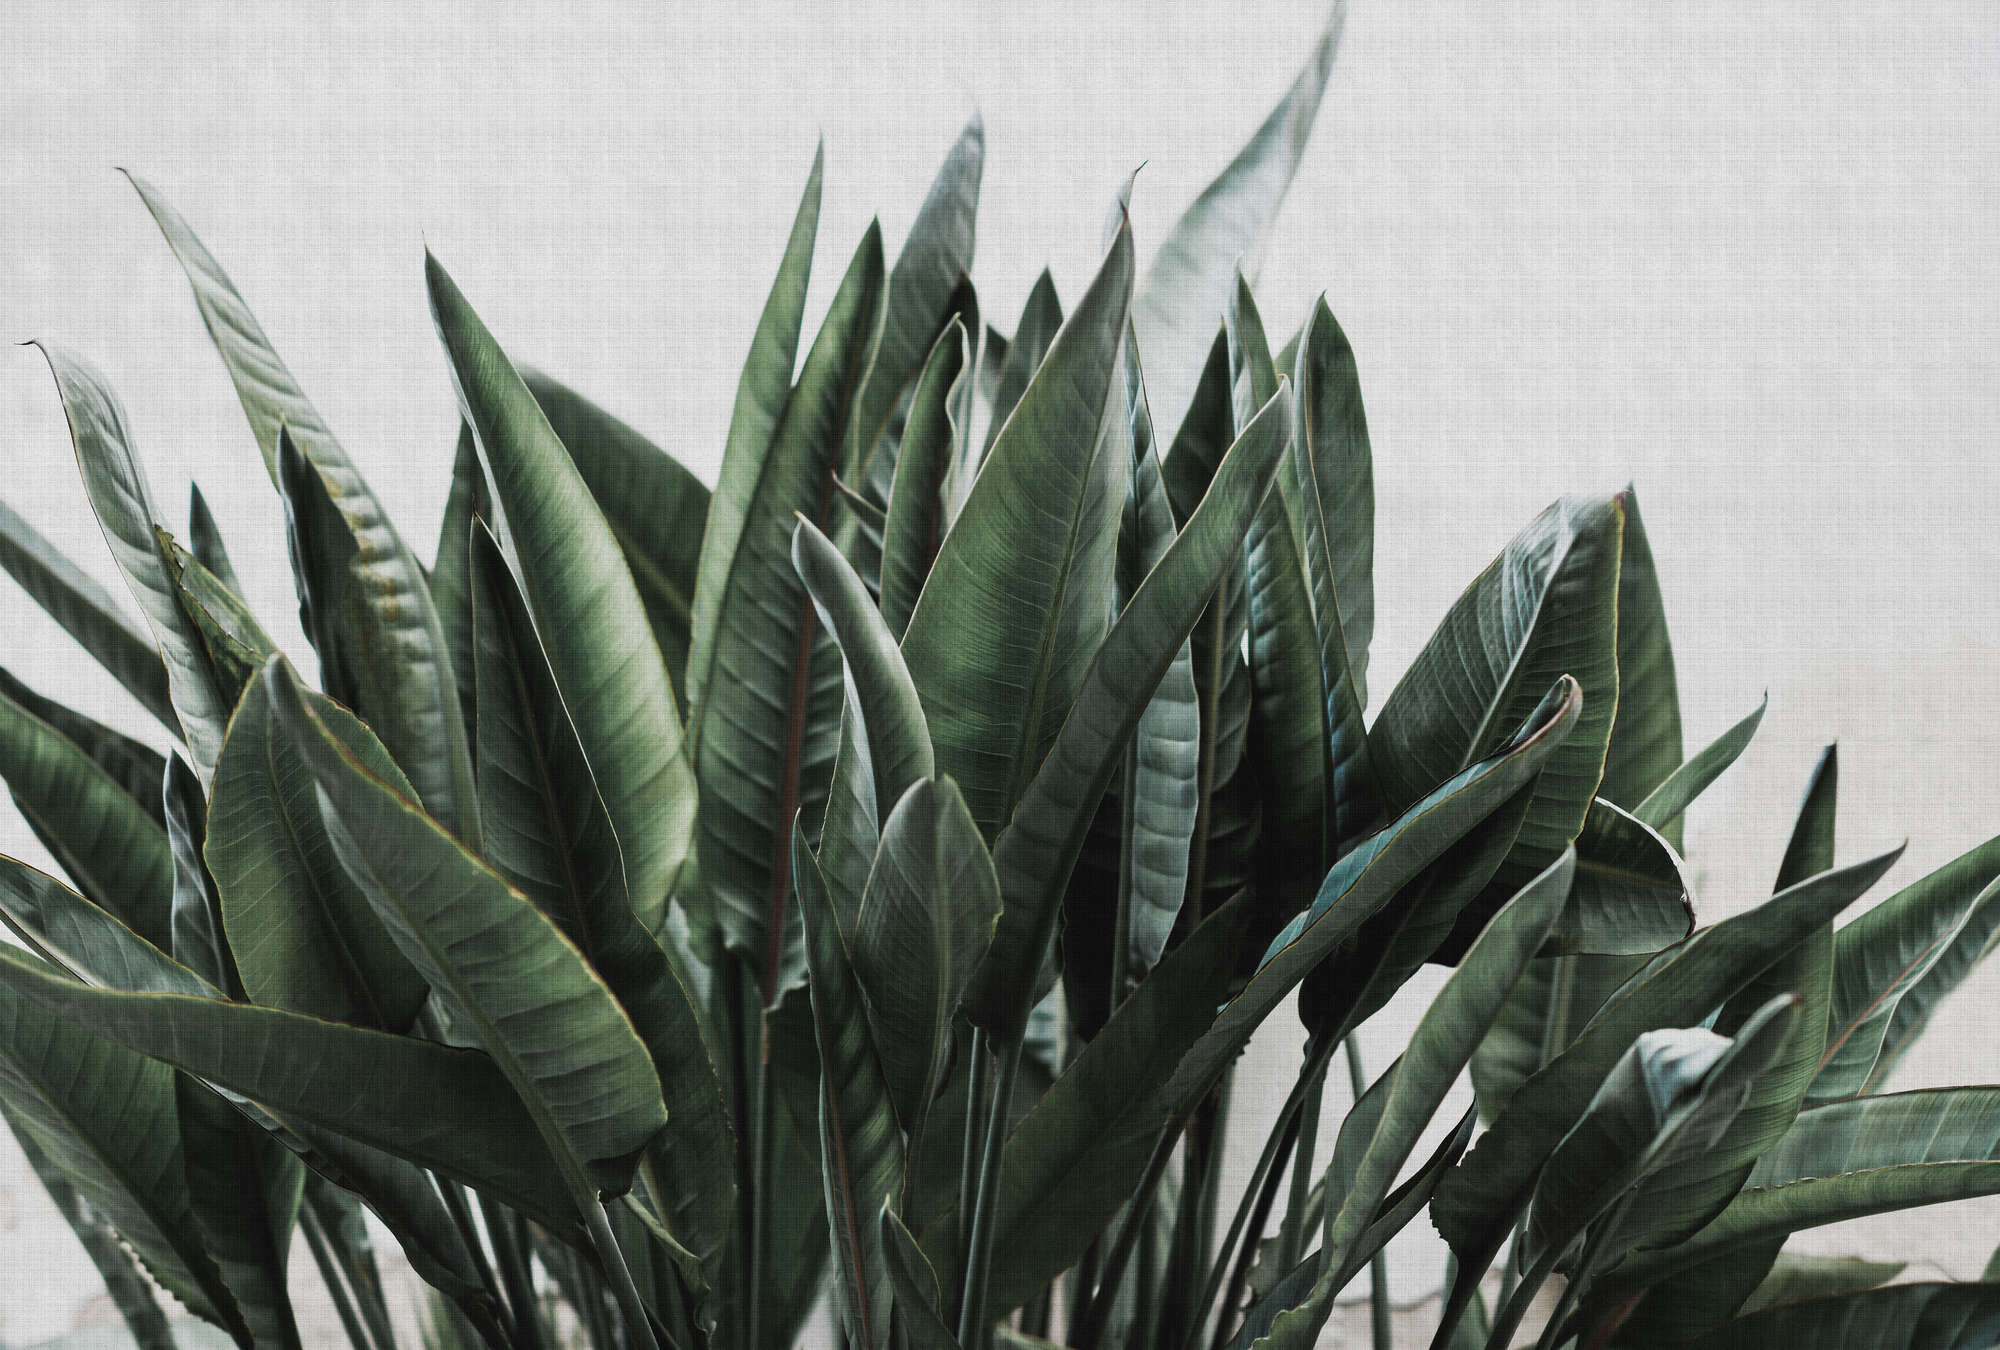             Urban jungle 2–Palmenblätter Fototapete, naturleinen Struktur exotische Pflanzen – Grau, Grün | Perlmutt Glattvlies
        